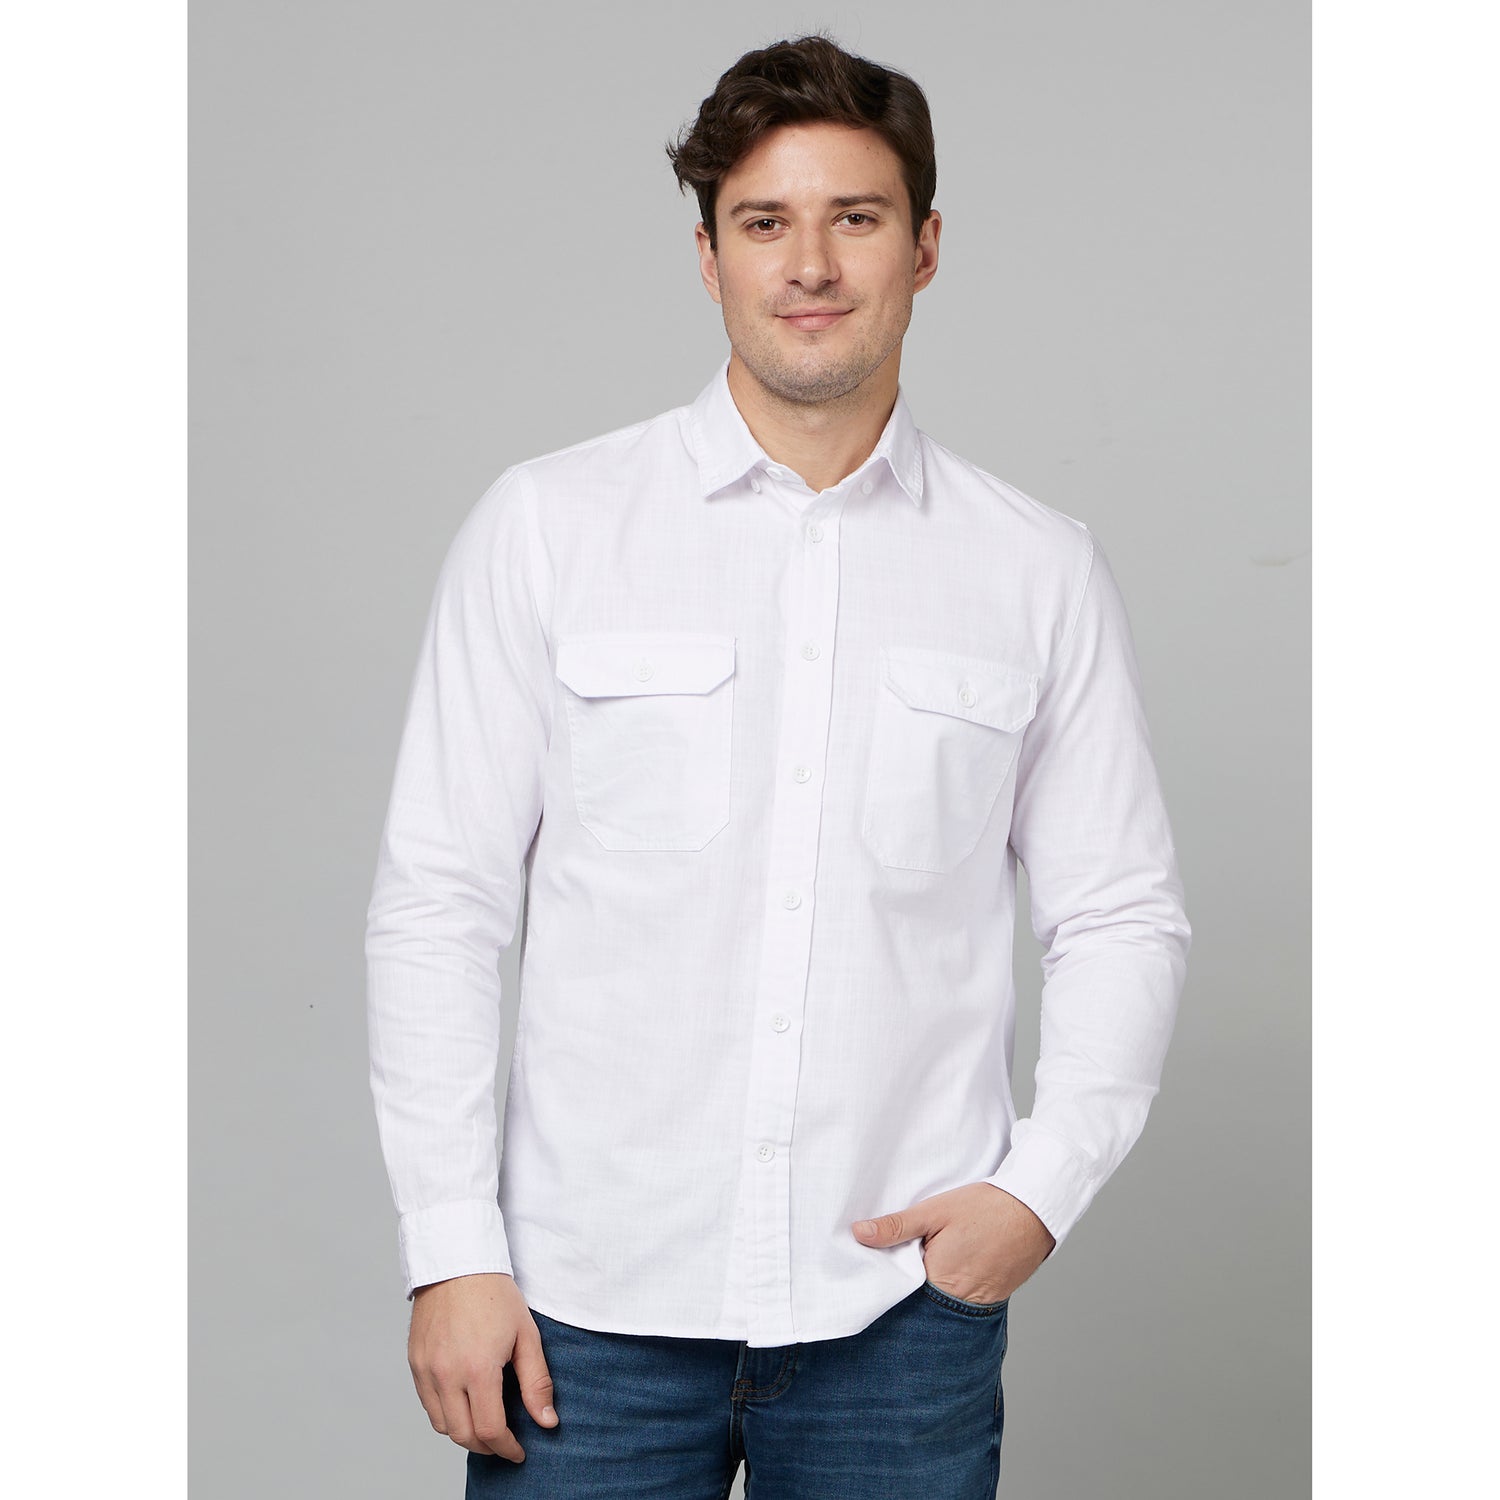 White Classic Opaque Cotton Casual Shirt (FANA)